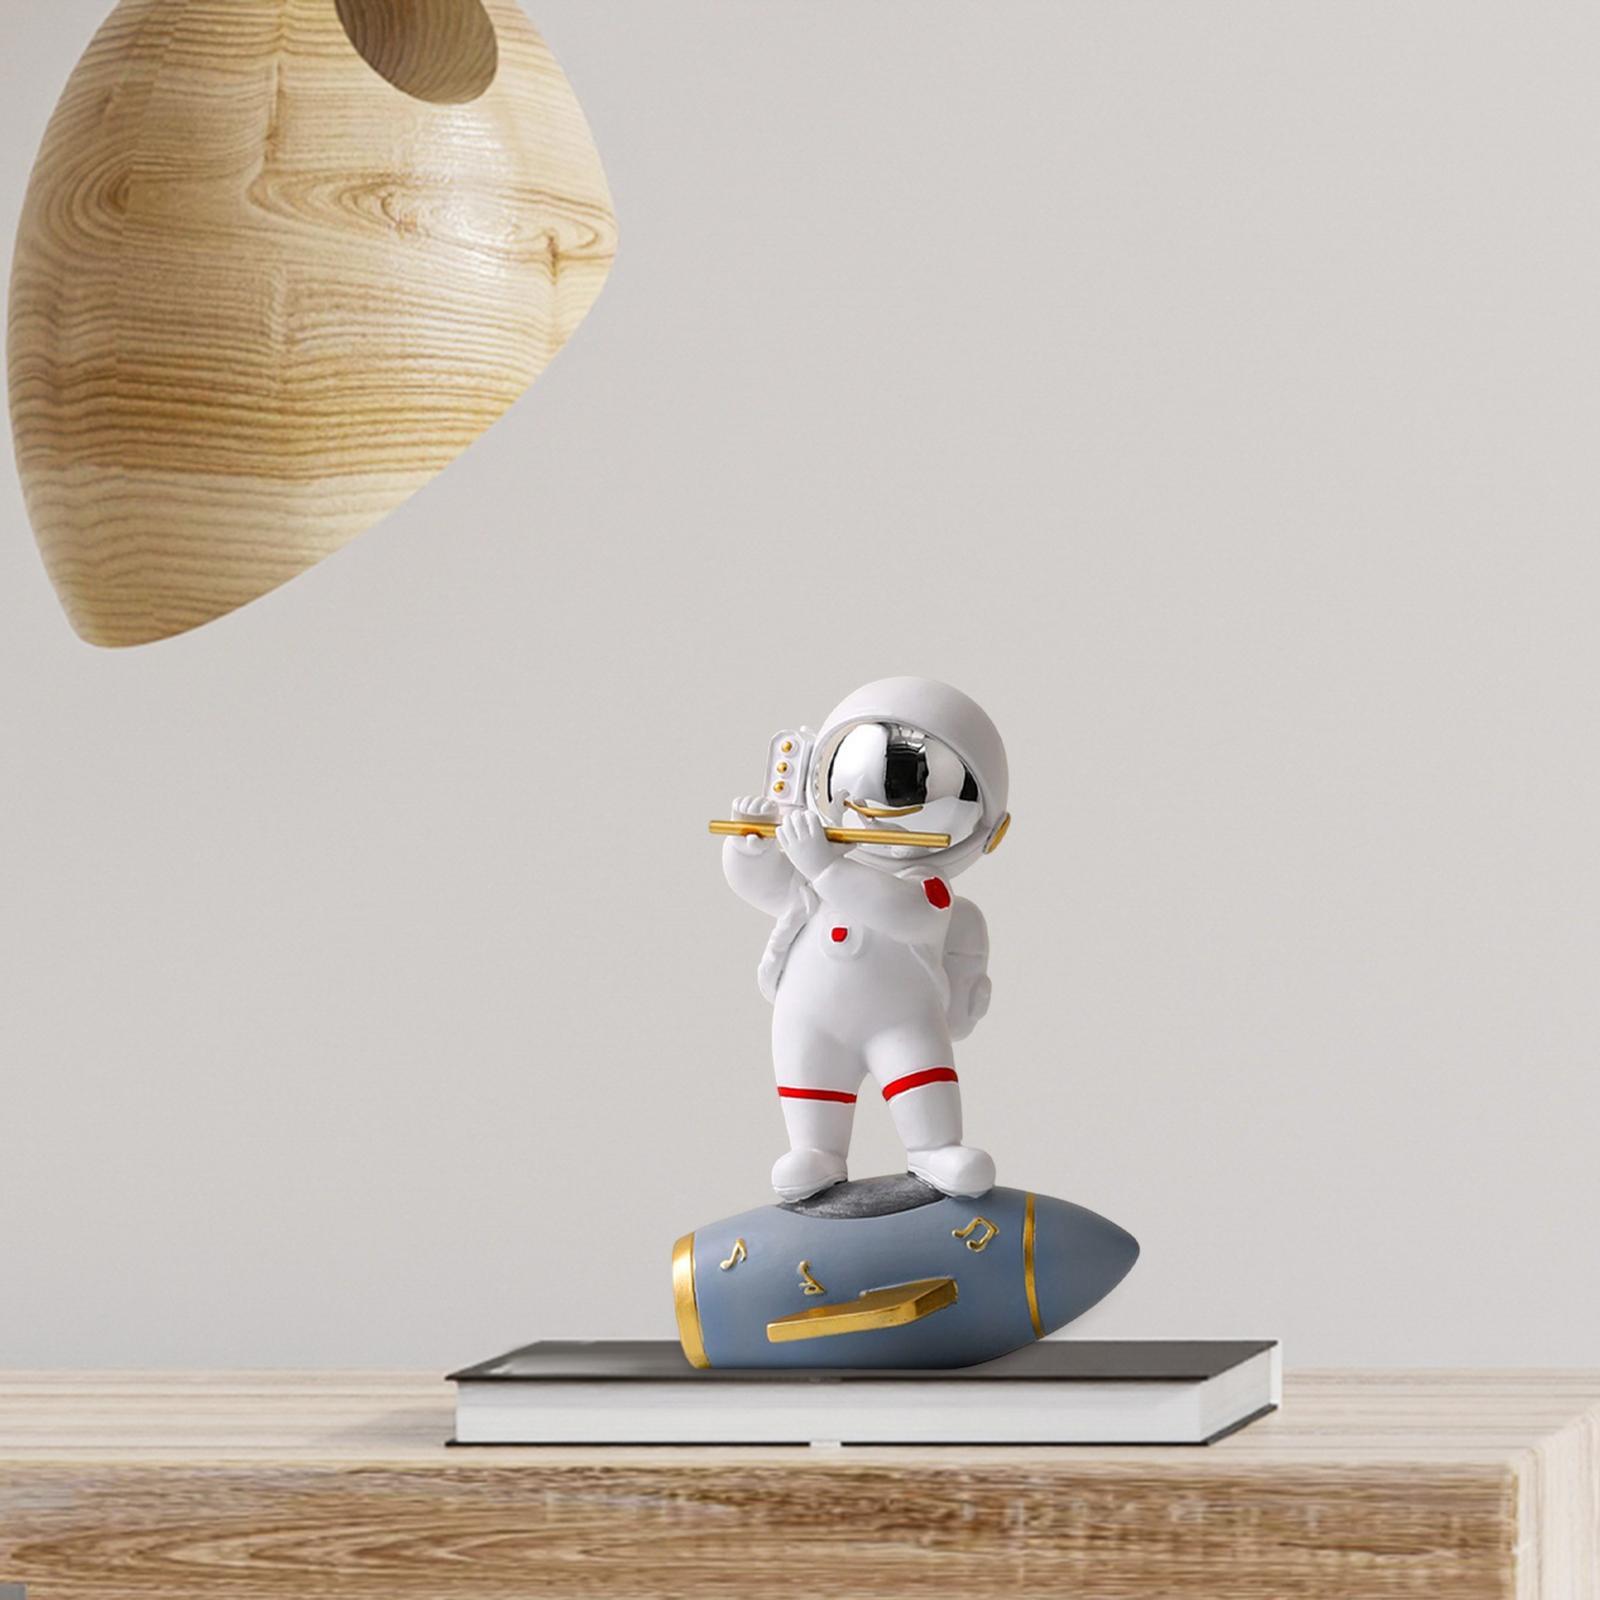 Astronaut Figurine Statue Astronaut Figure Sculpture for Home Office Decor